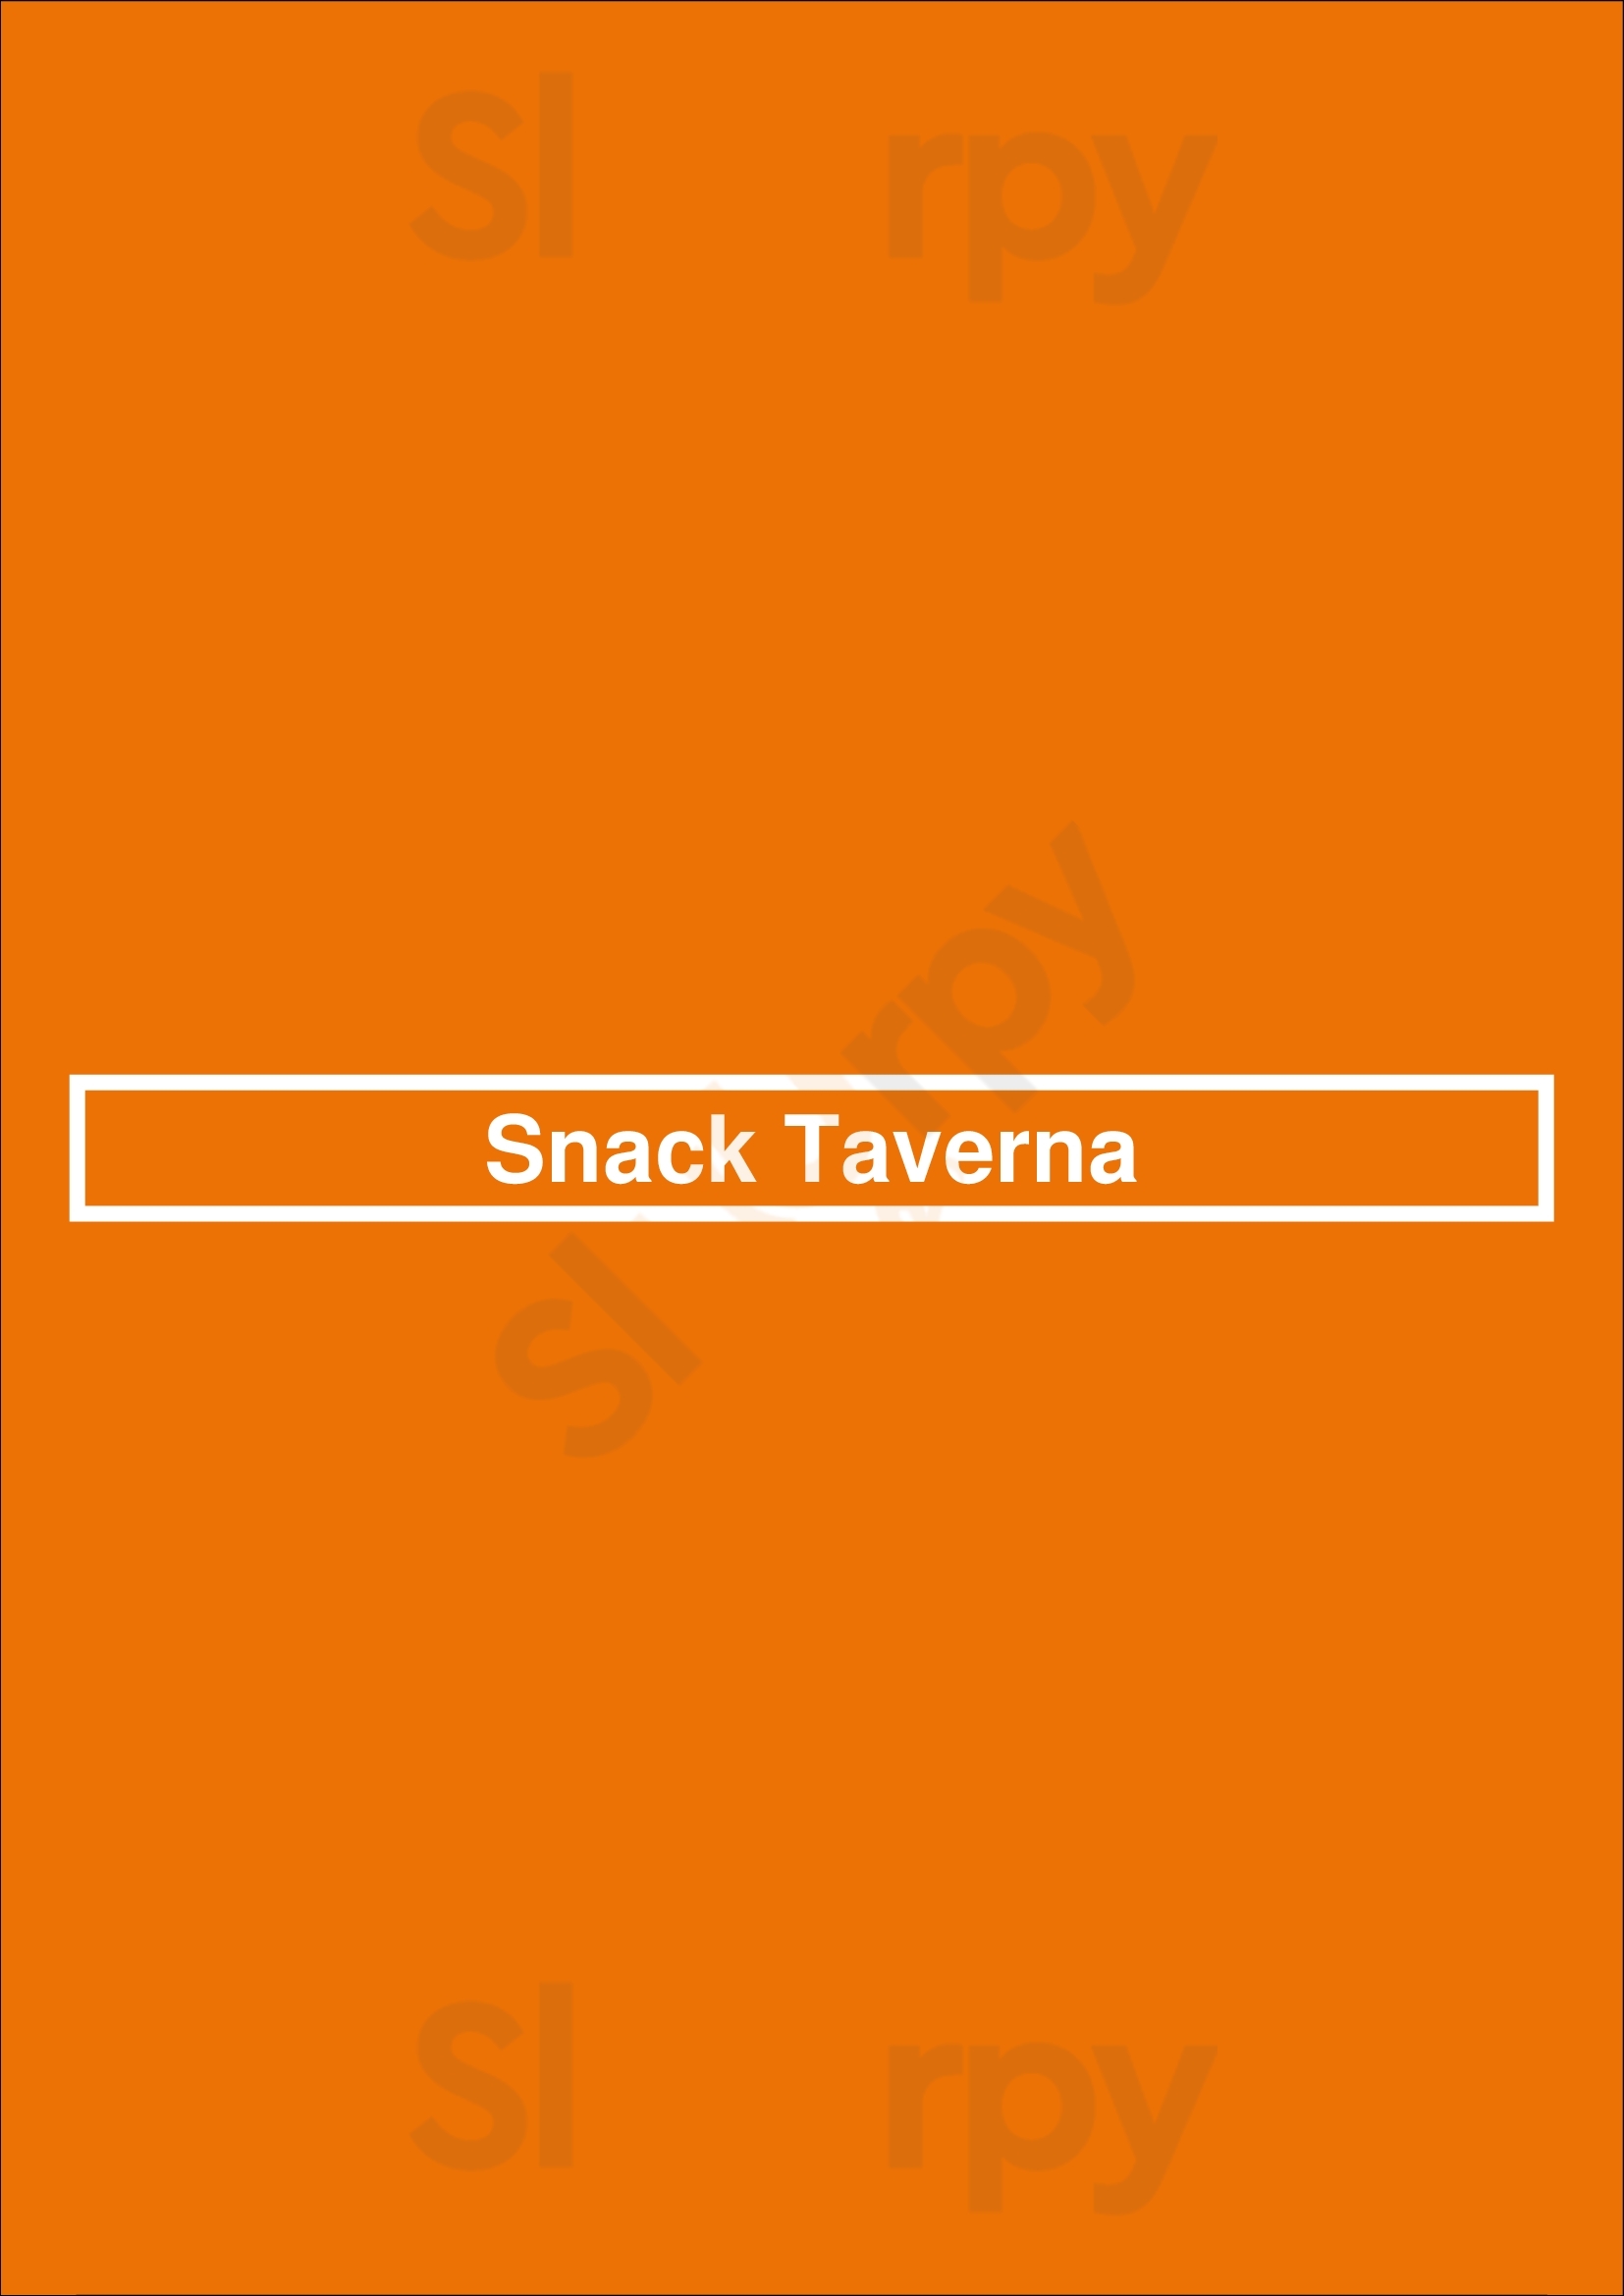 Snack Taverna New York City Menu - 1